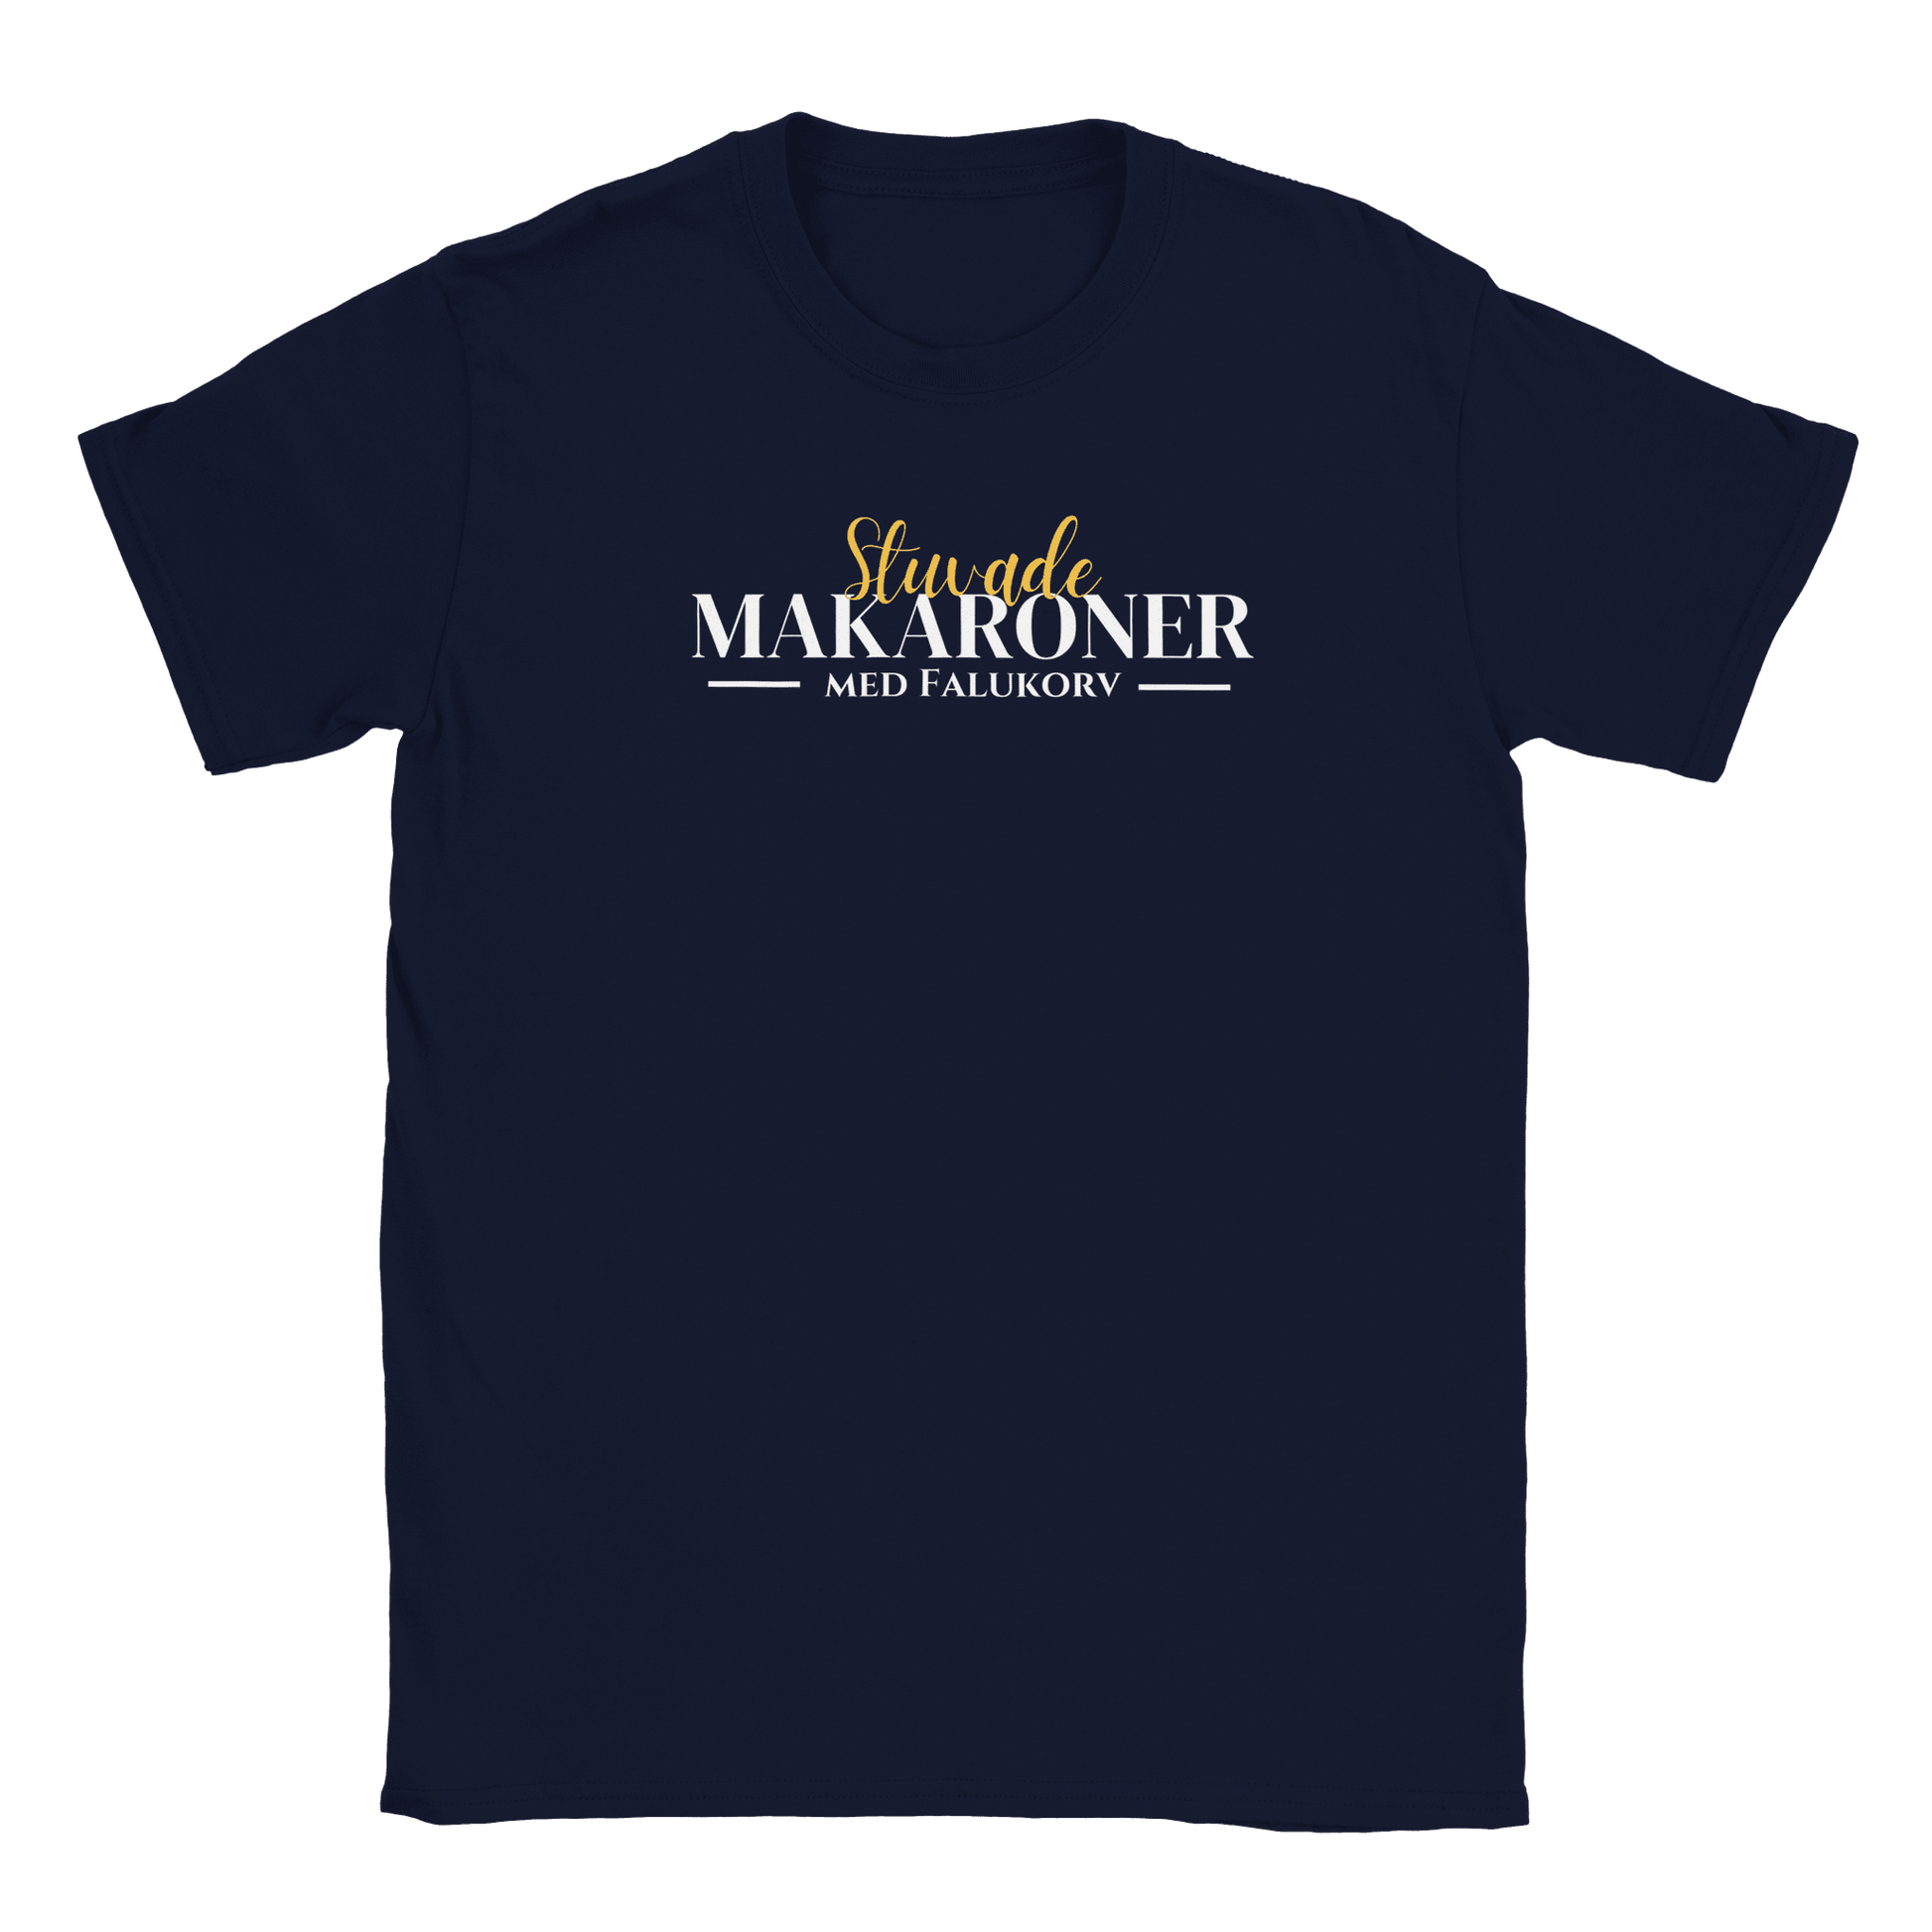 Stuvade makaroner med falukorv - T-shirt för barn Marinblå